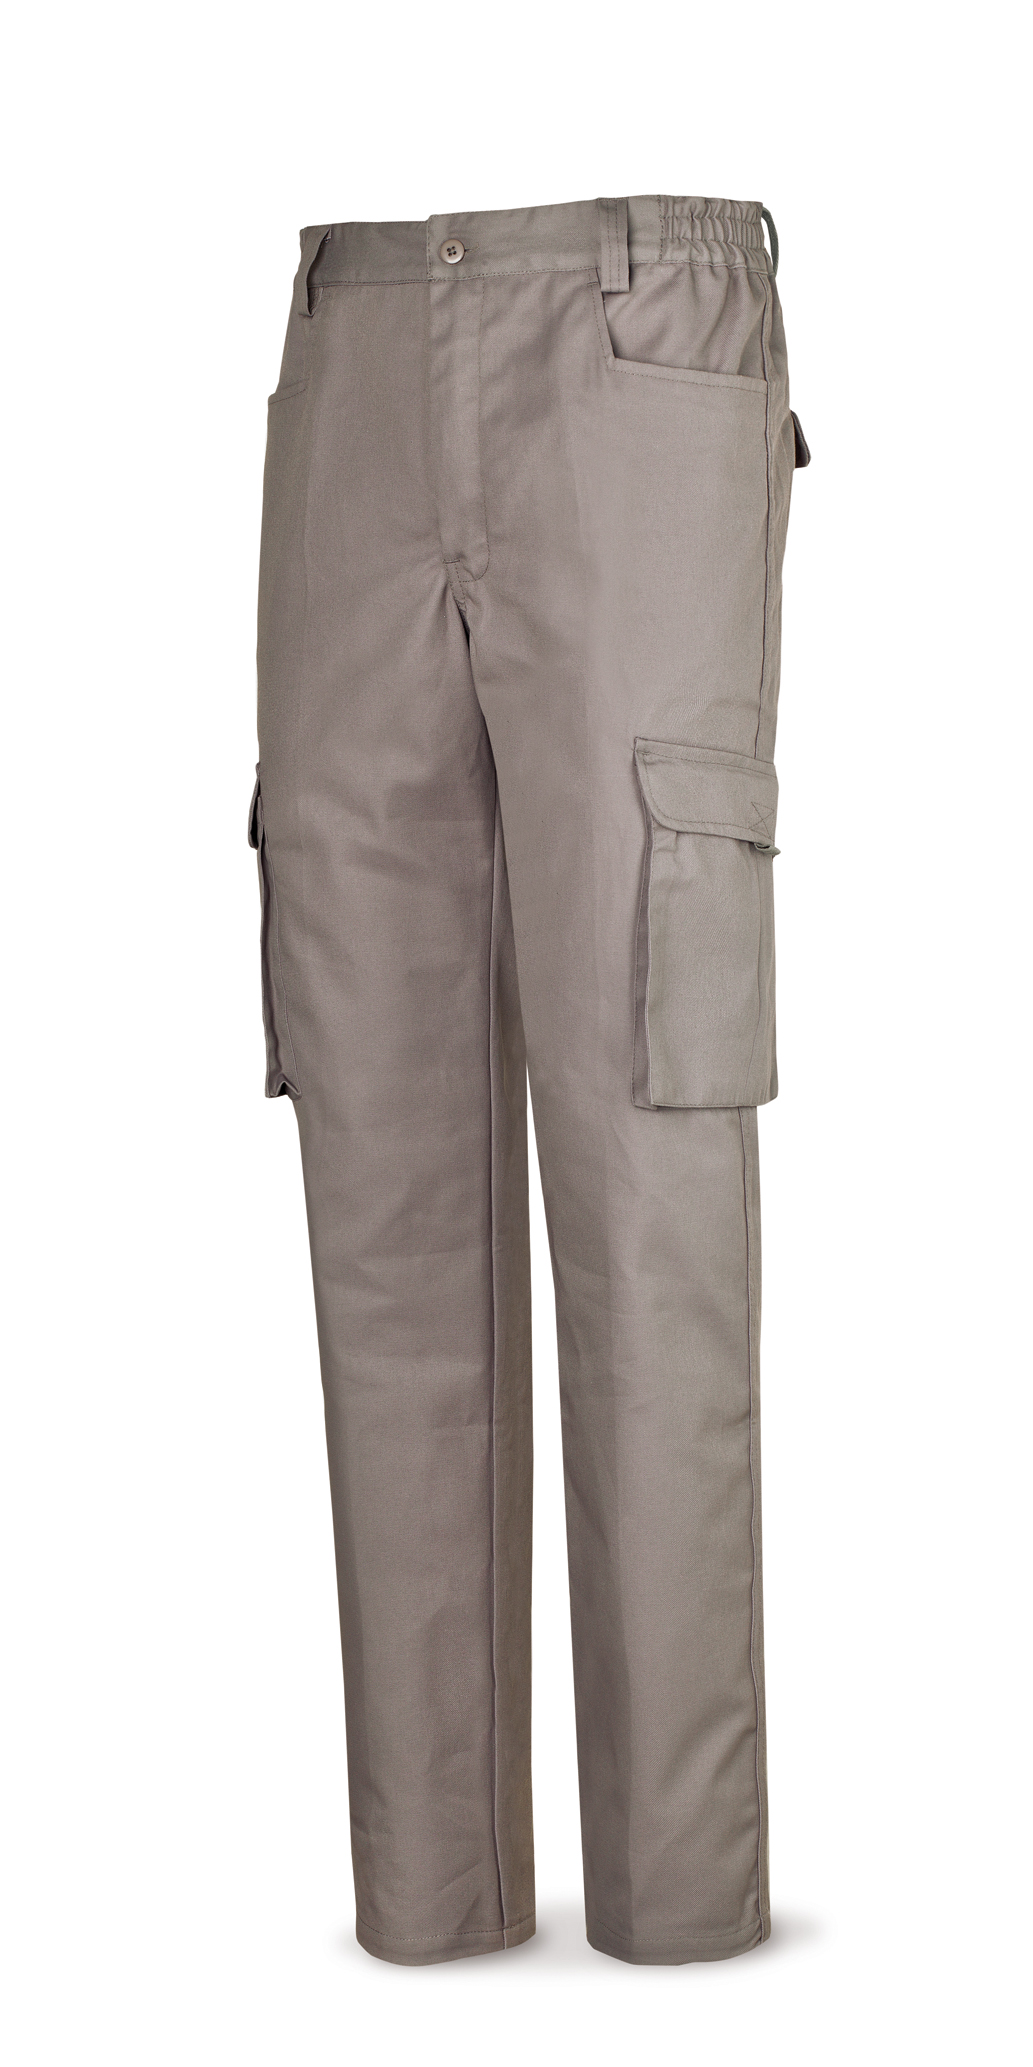 488-PTOPG Vestuario Laboral Serie Top Pantalón gris algodón de 245 g. Multibolsillo